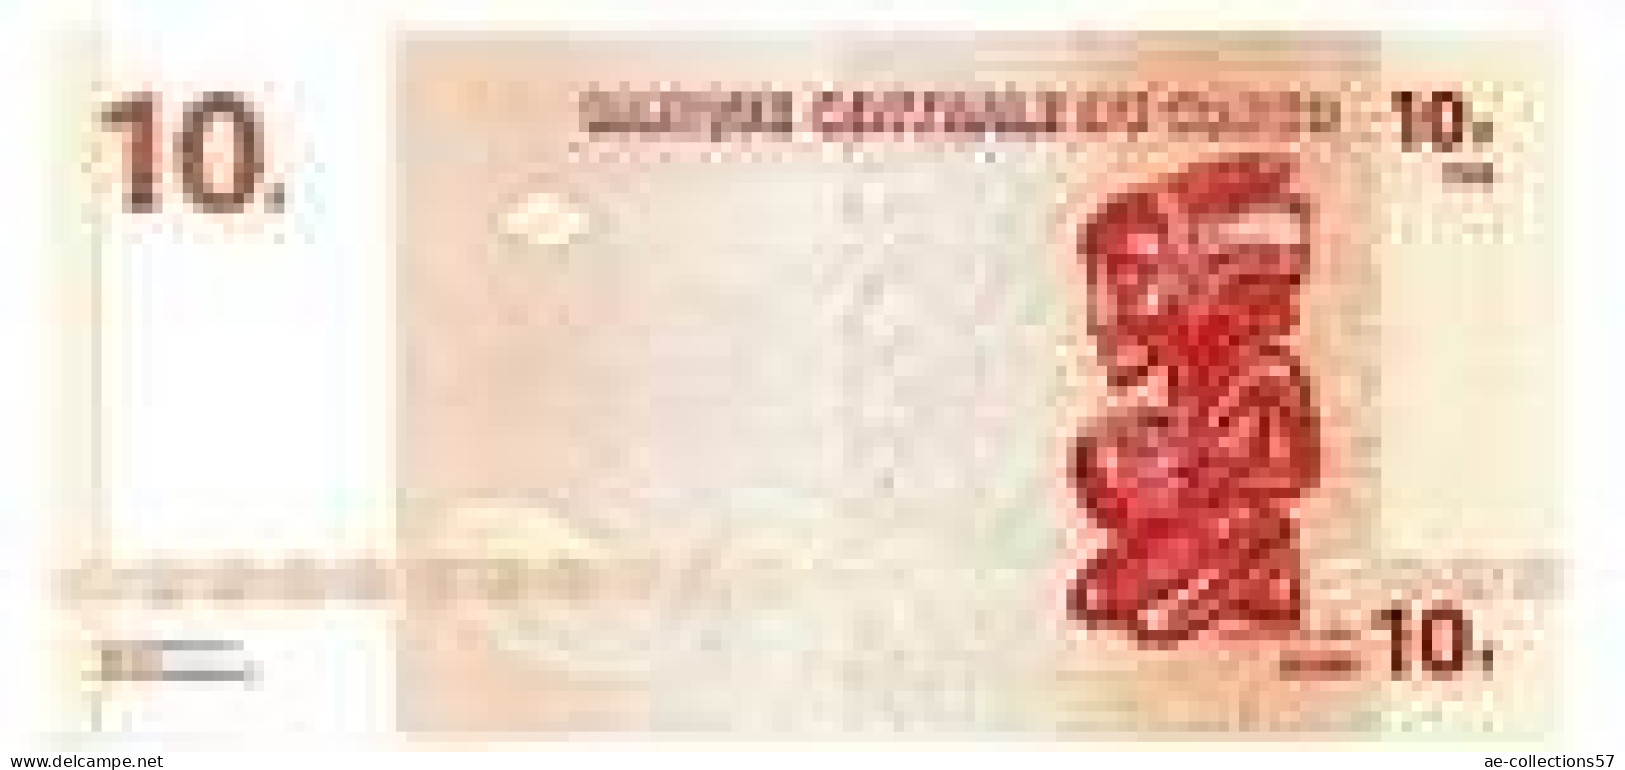 MA 26203 / Congo 10 Francs 30/06/2003 UNC - Sin Clasificación